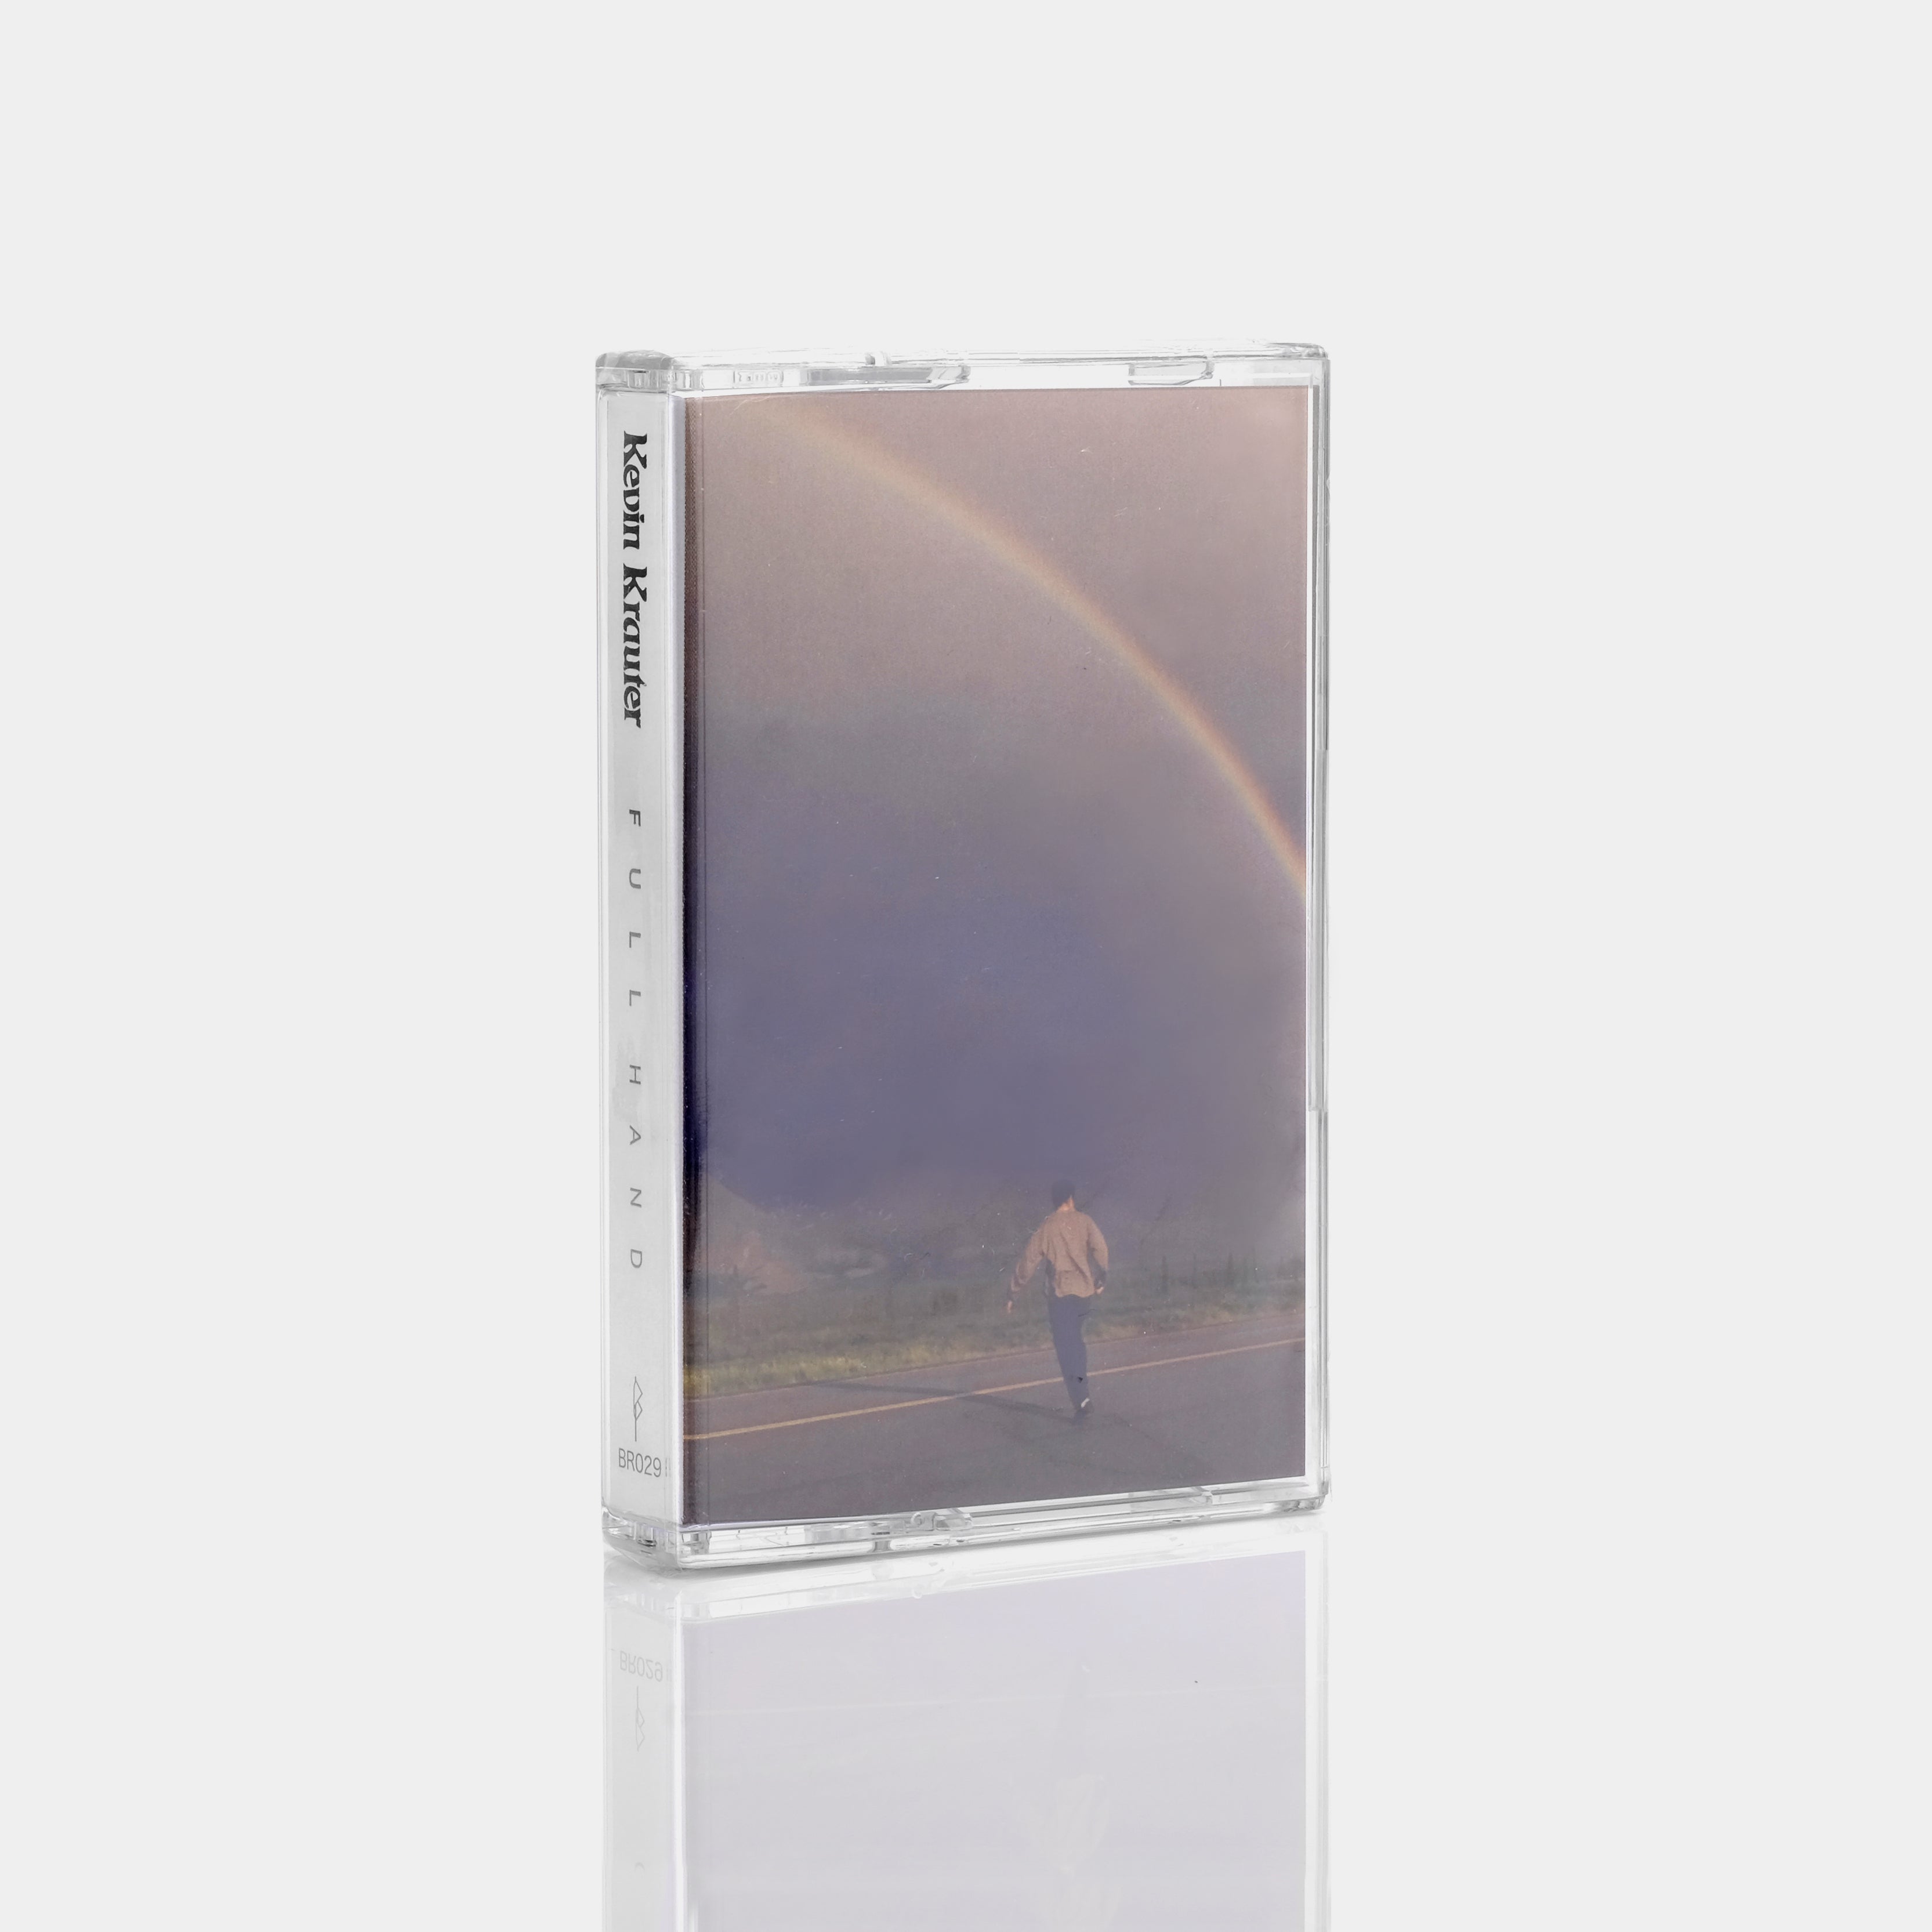 Kevin Krauter - Full Hand Cassette Tape